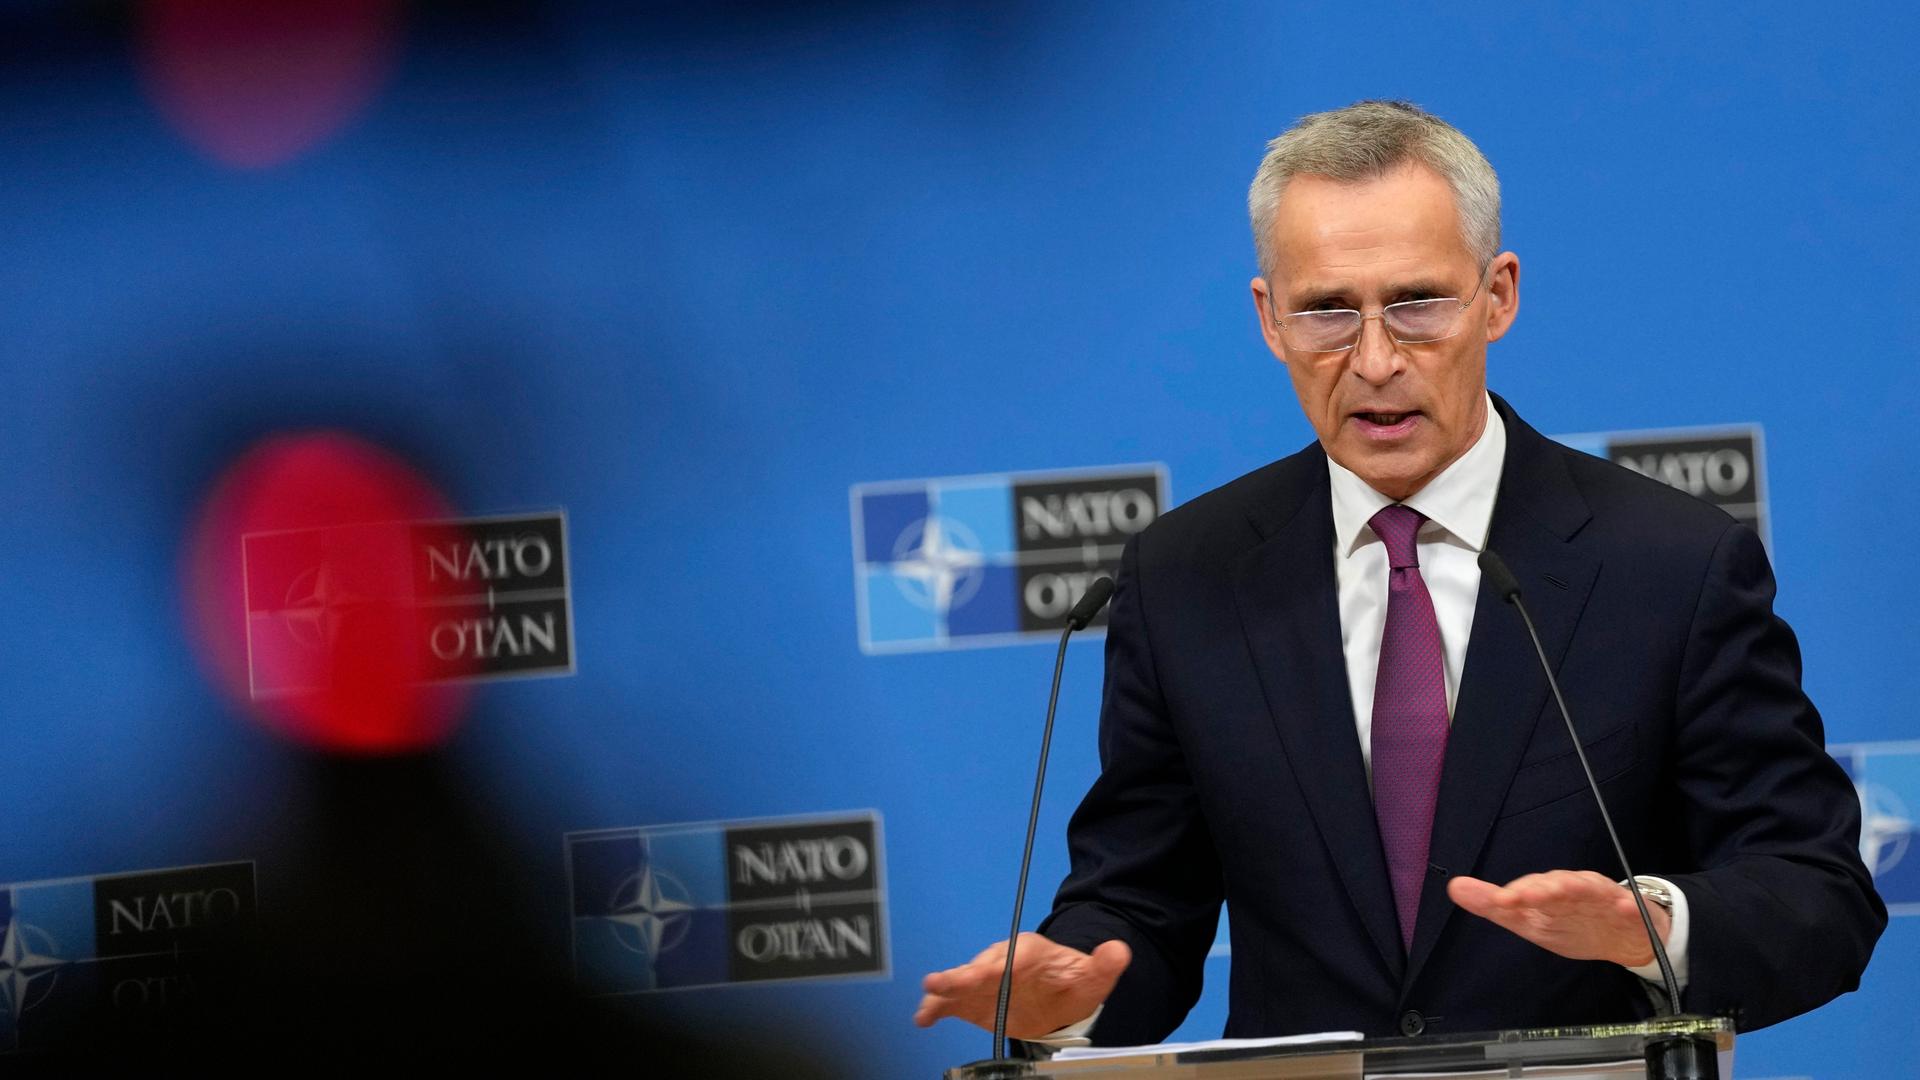 NATO-Generalsekretär Stoltenberg spricht in ein Mikrofon. Im Hintergrund ist eine blaue Wand mit Logos der NATo zu sehen